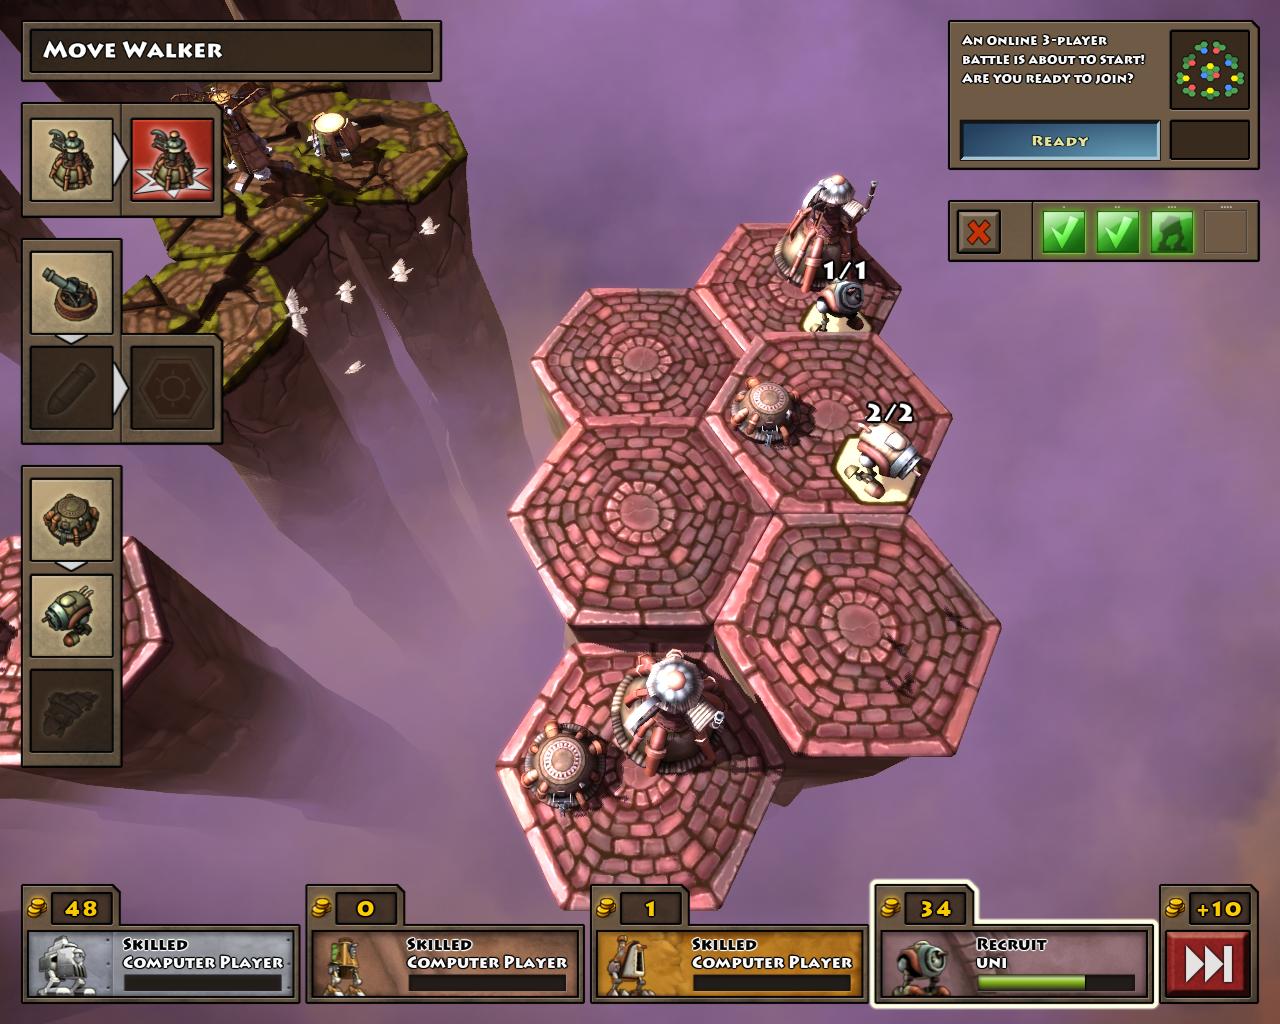 Greed Corp Km akte na sperov v multiplayeri, mete rozohra partiu s potaovm oponentom.